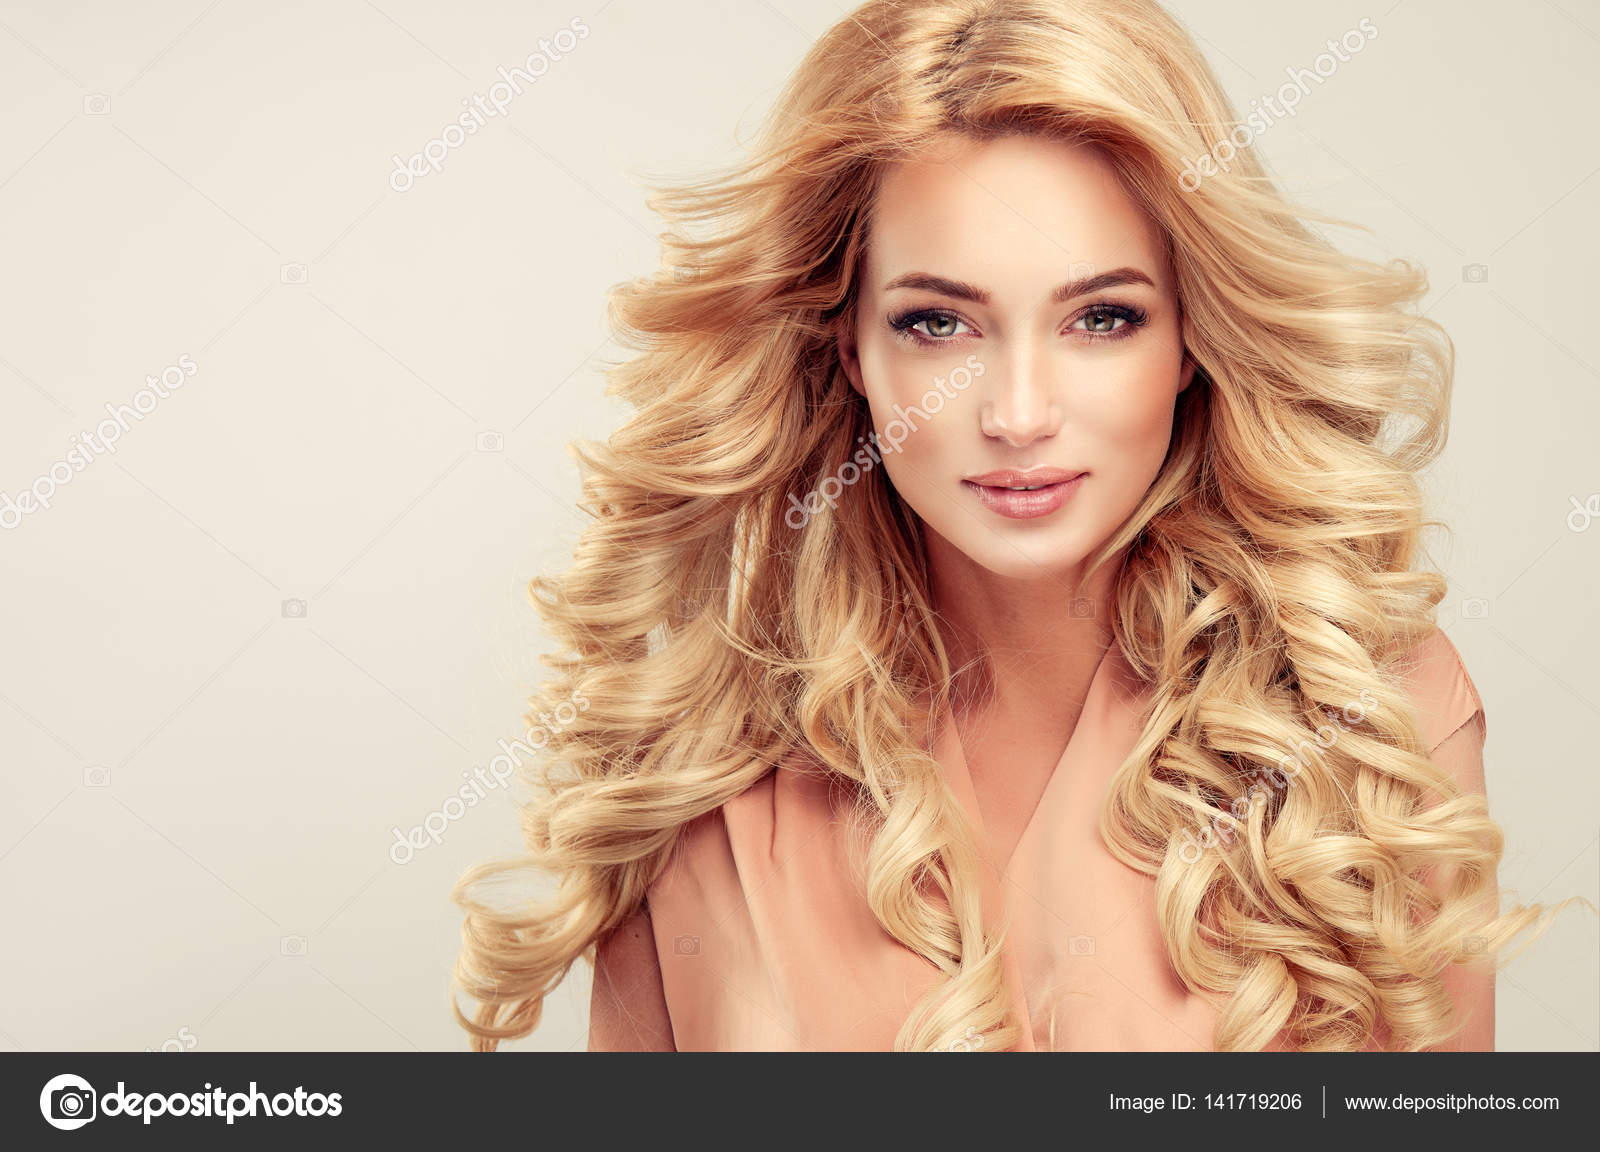 Blonde Hair Girl - wide 1